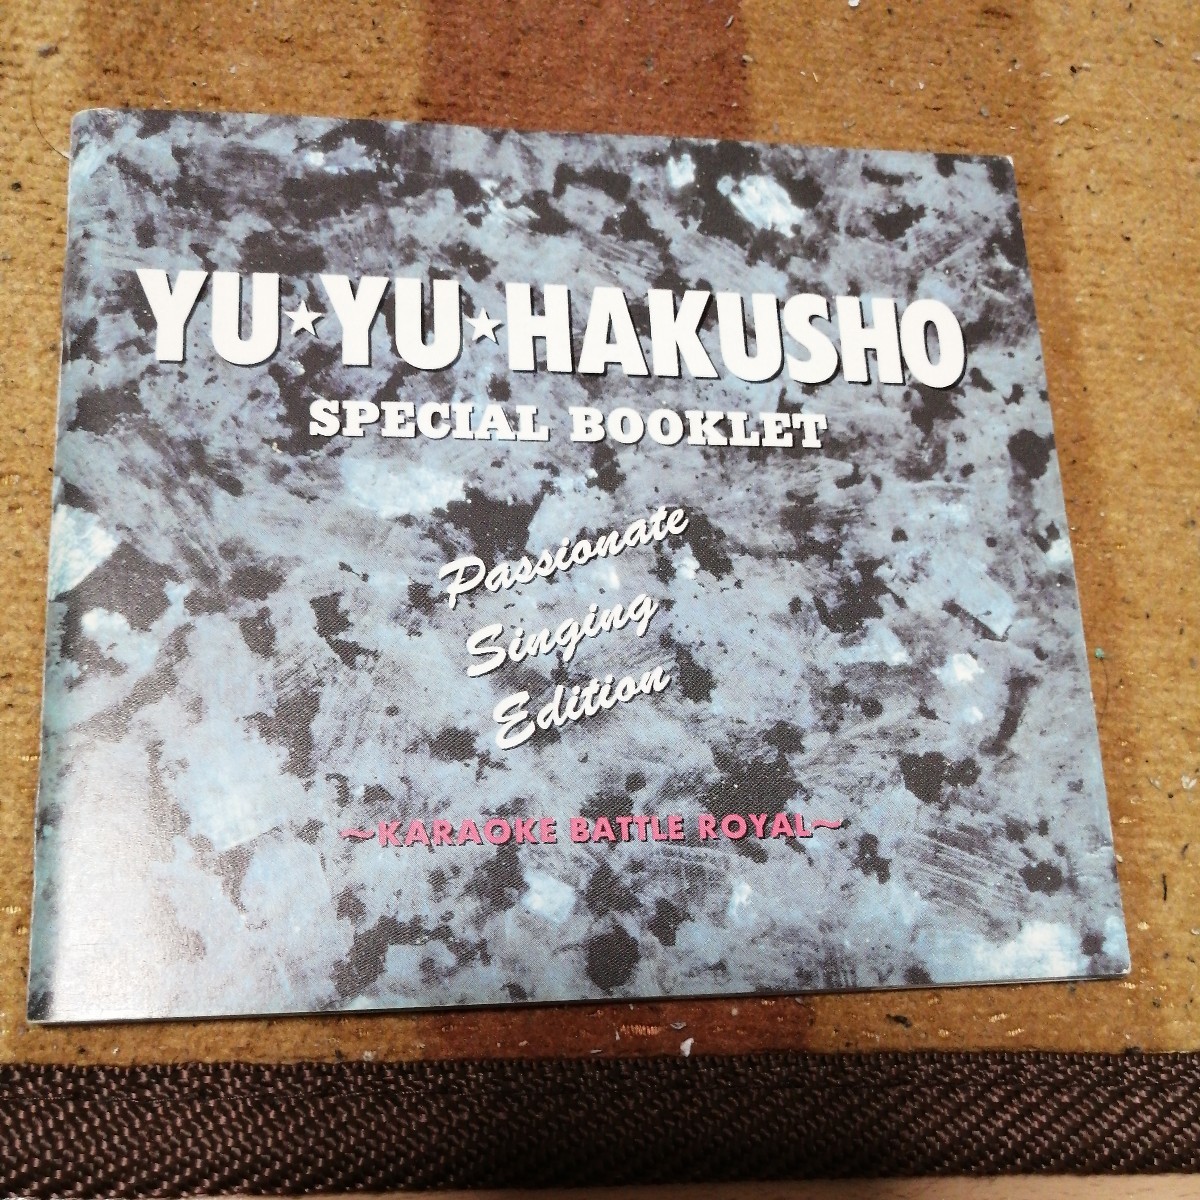  воспроизведение проверка settled CD альбом Yu Yu Hakusho .. сборник караоке Battle Royal CD 2 листов комплект 